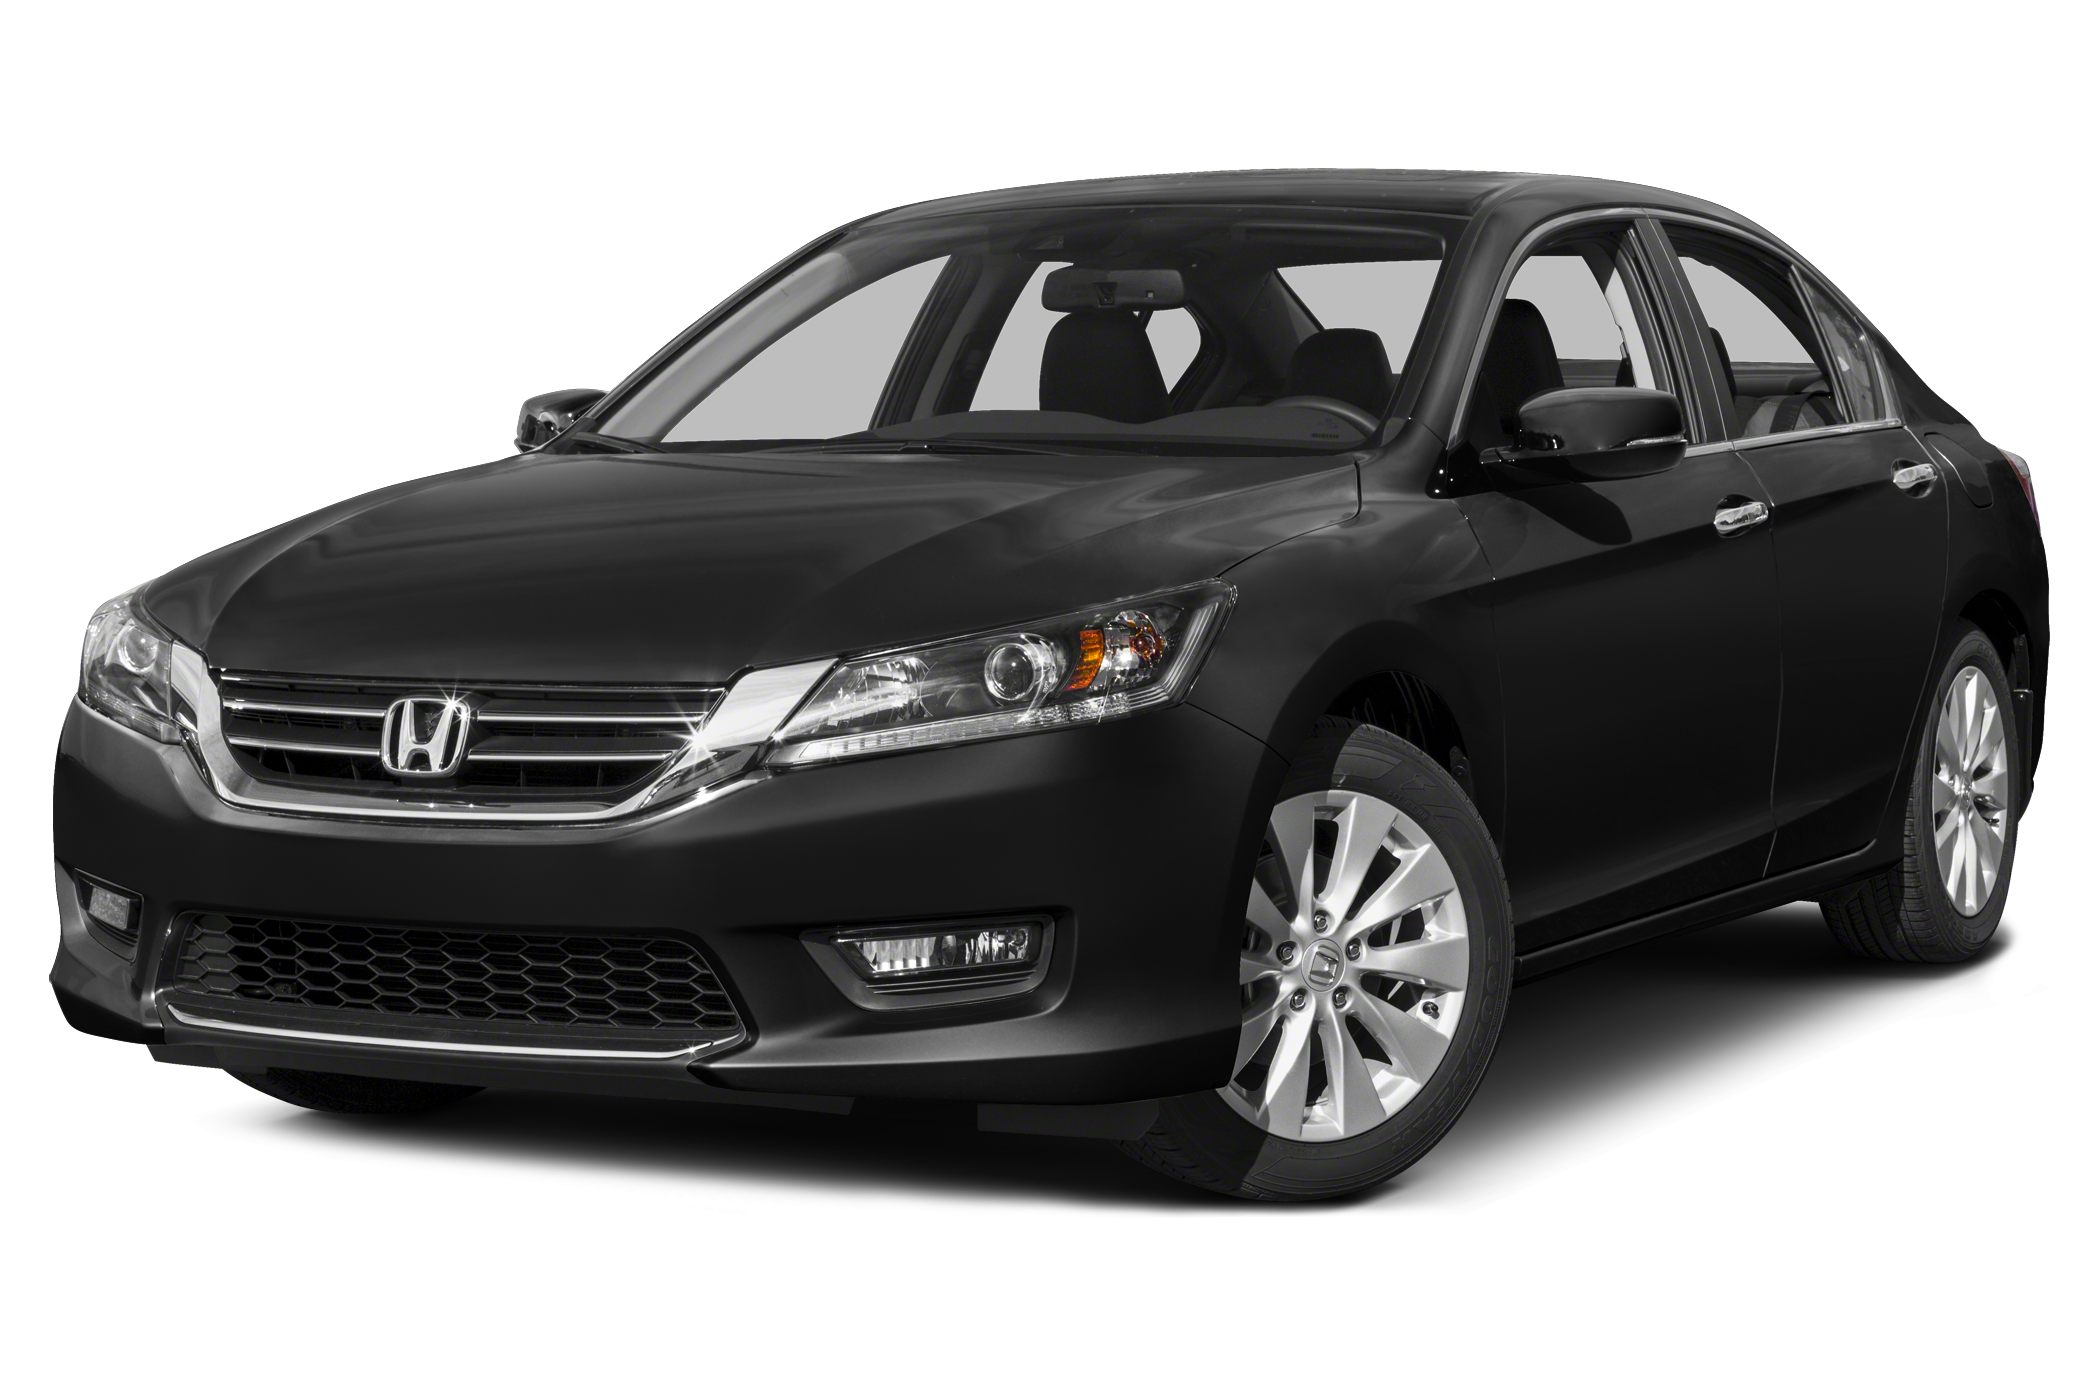 Great Deals on a new 2015 Honda Accord EX-L V-6 4dr Sedan at The